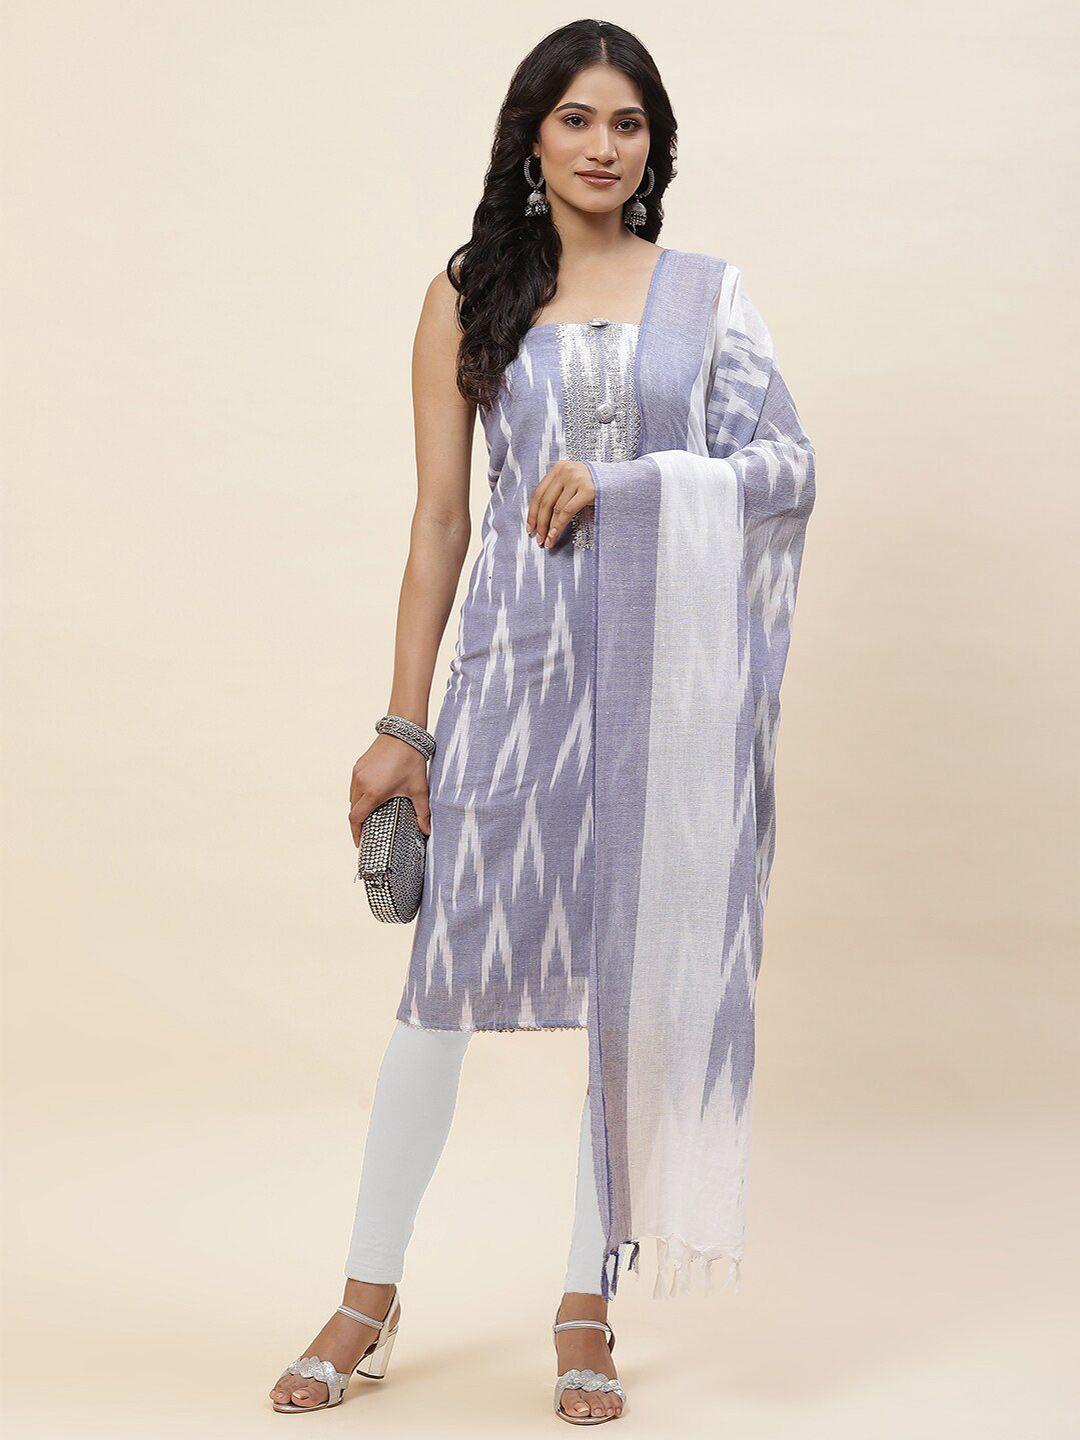 meena bazaar ikat sequinned unstitched dress material